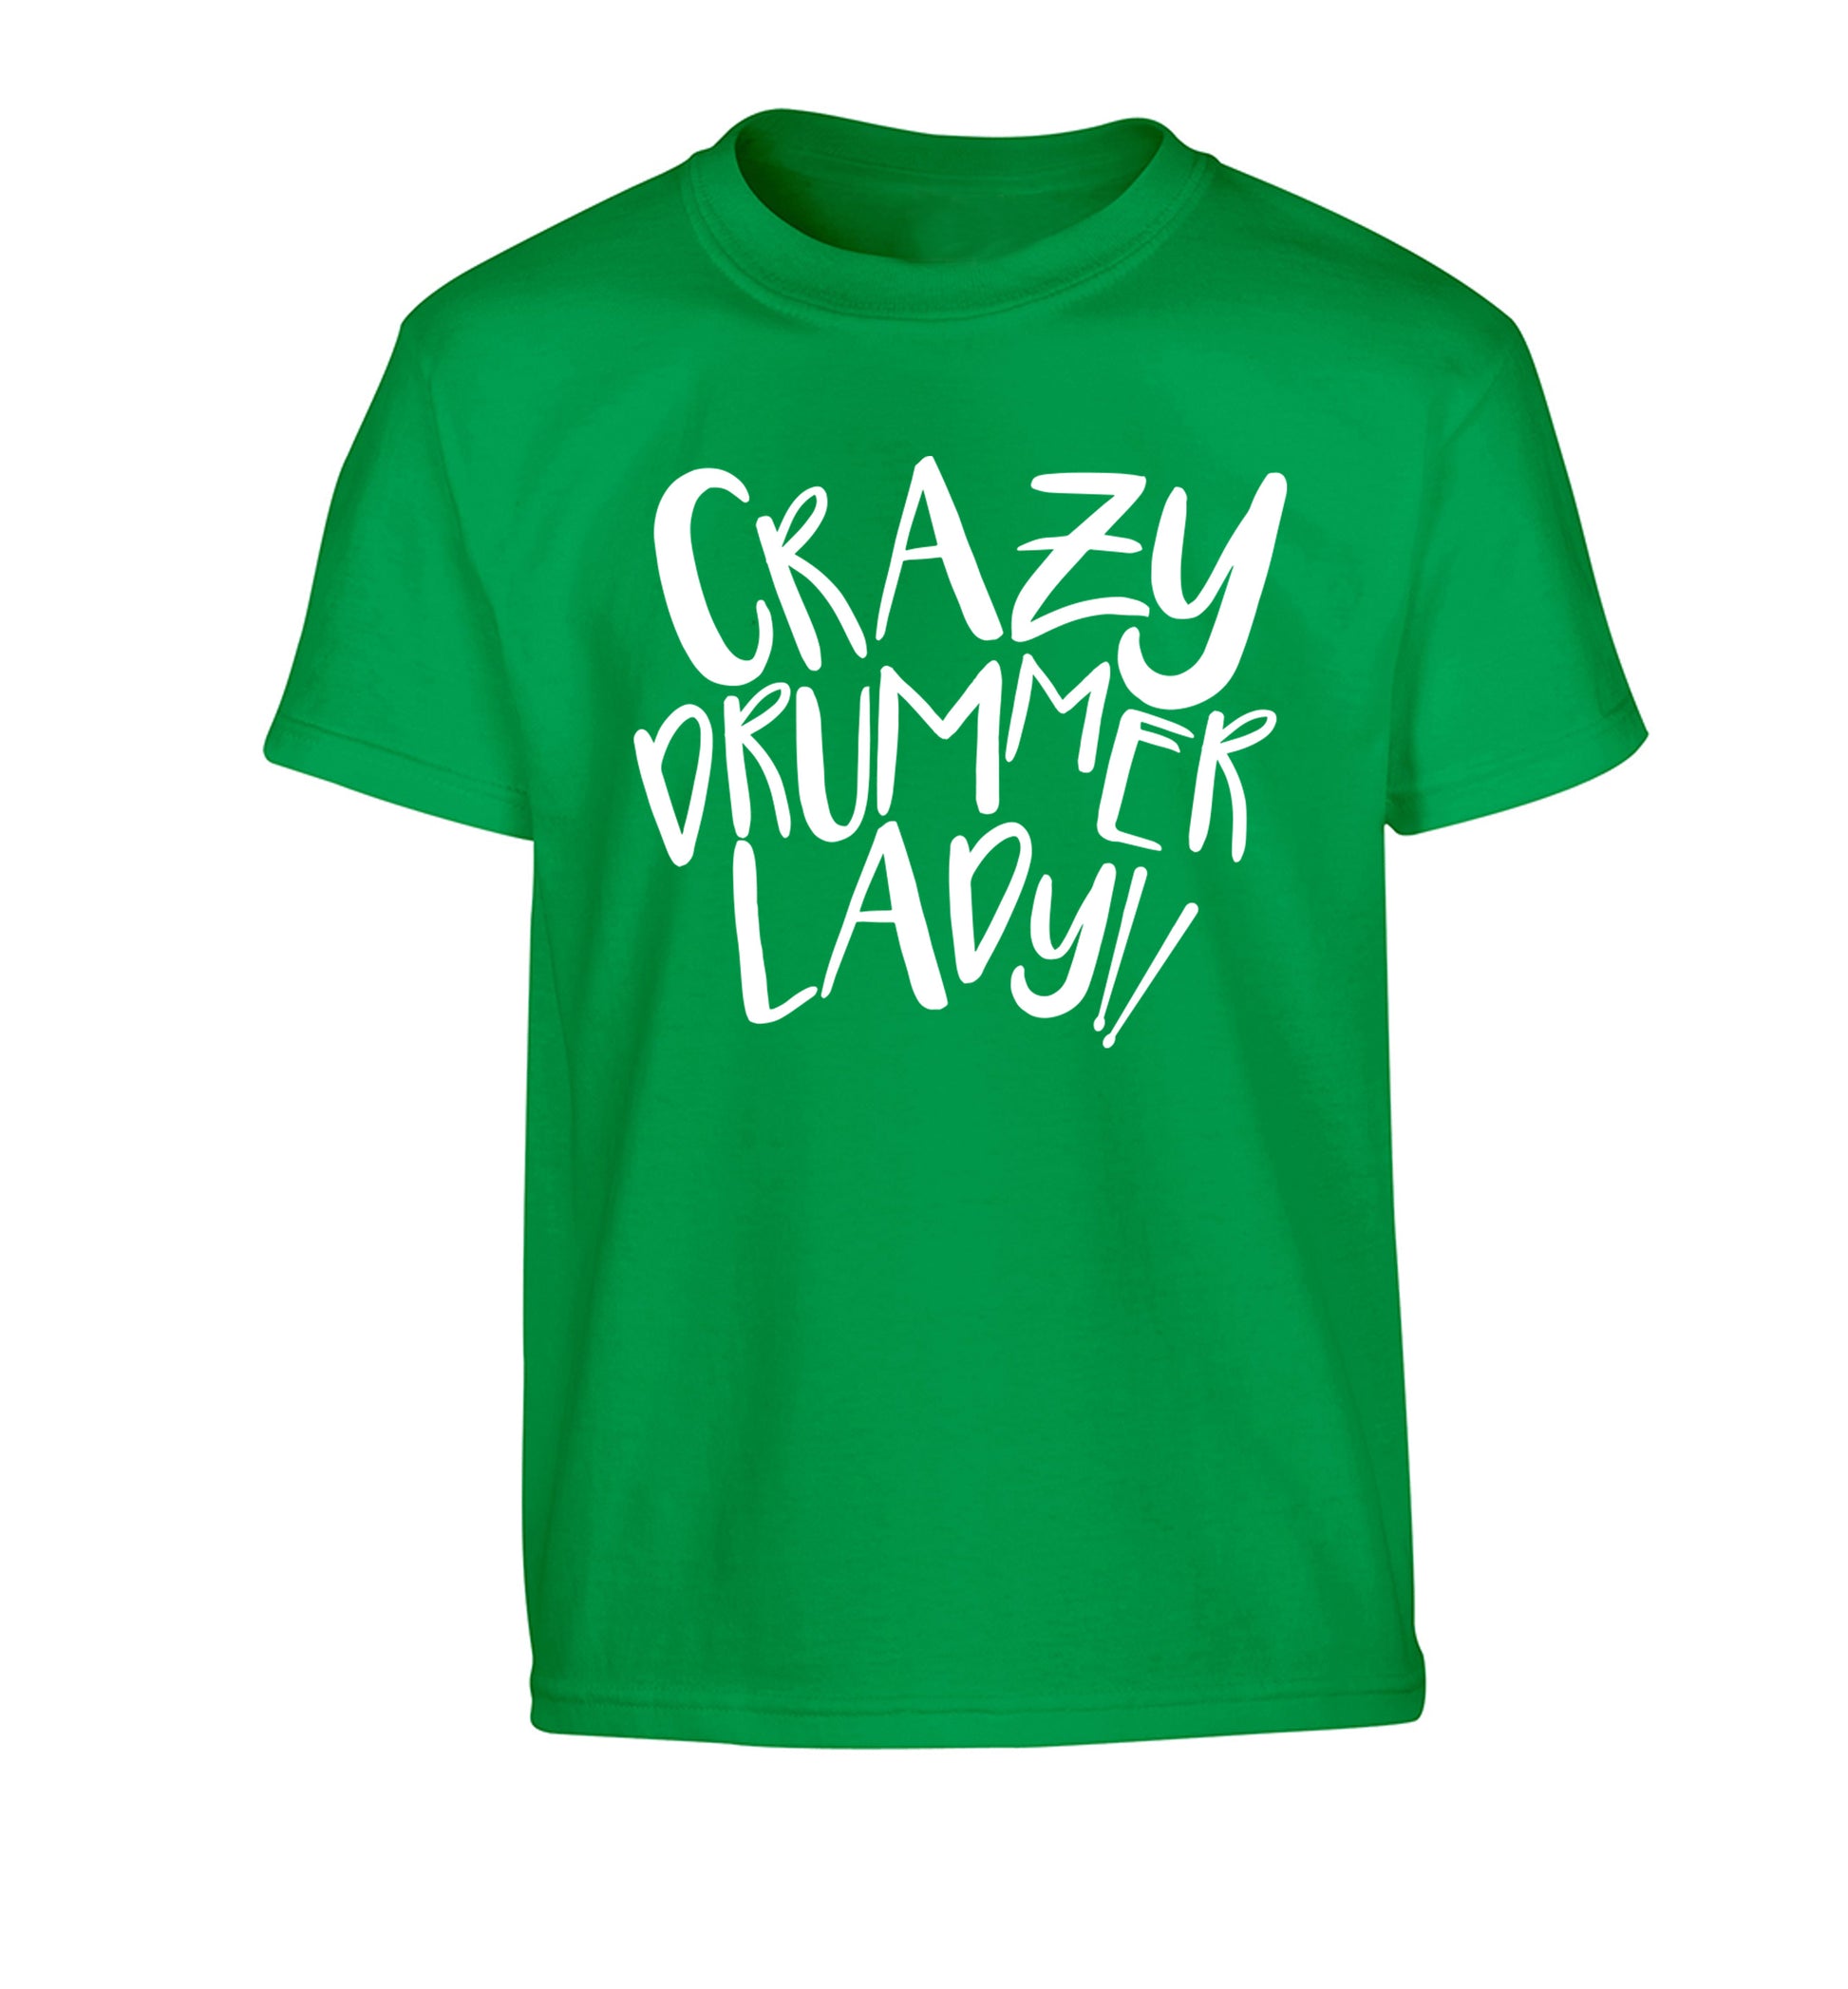 Crazy drummer lady Children's green Tshirt 12-14 Years